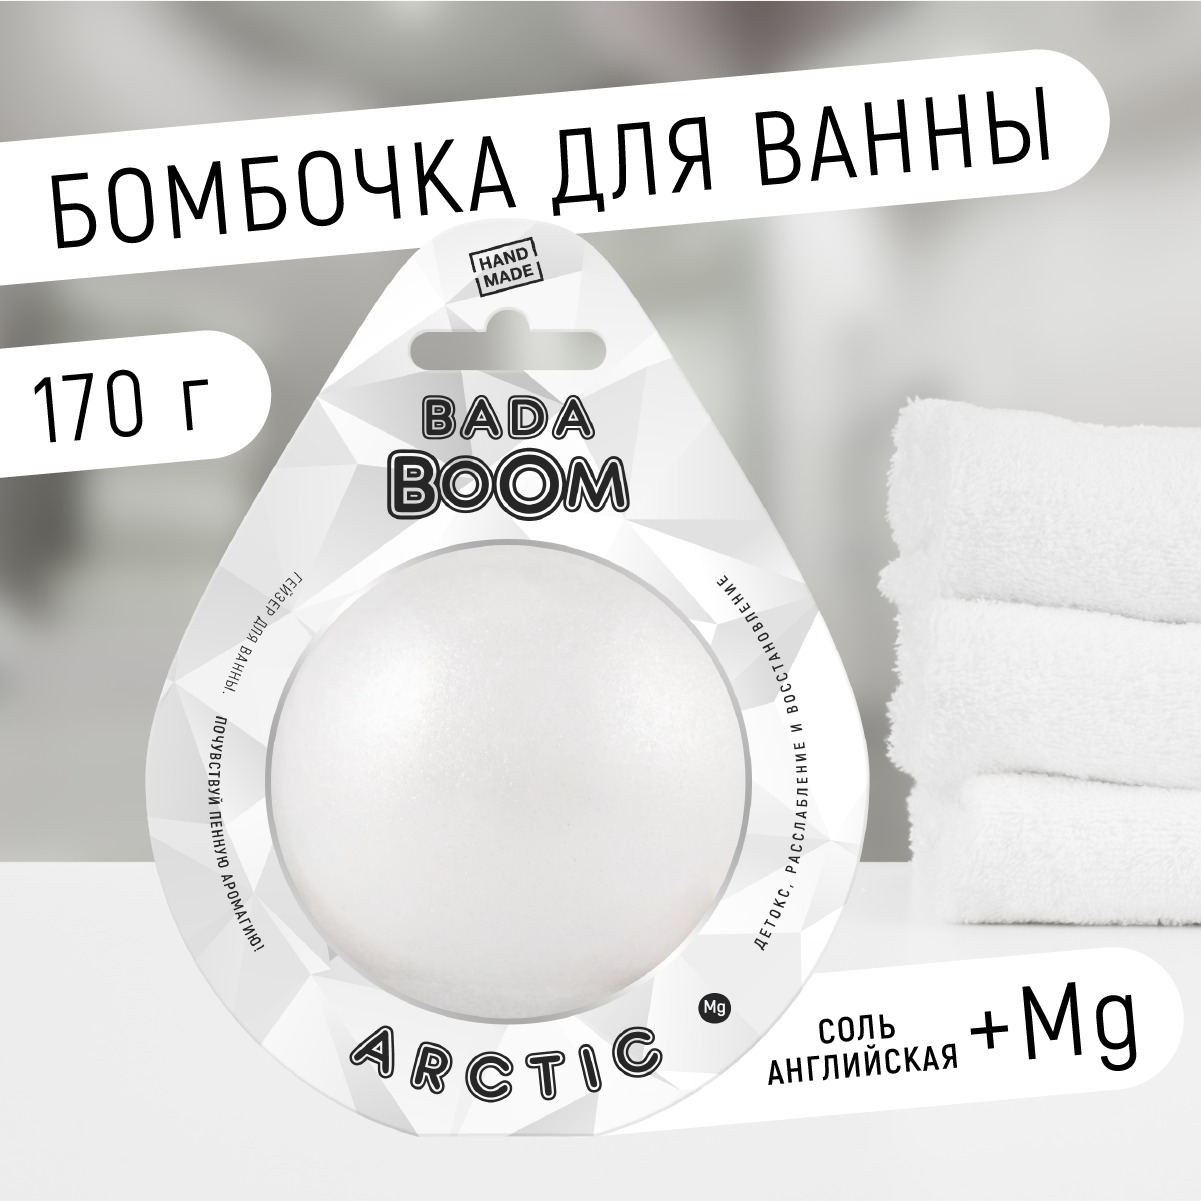 Бомбочка для ванны Arctic без запаха 170 г mirida шипучая бомбочка для ванны для расслабления тела и души 110